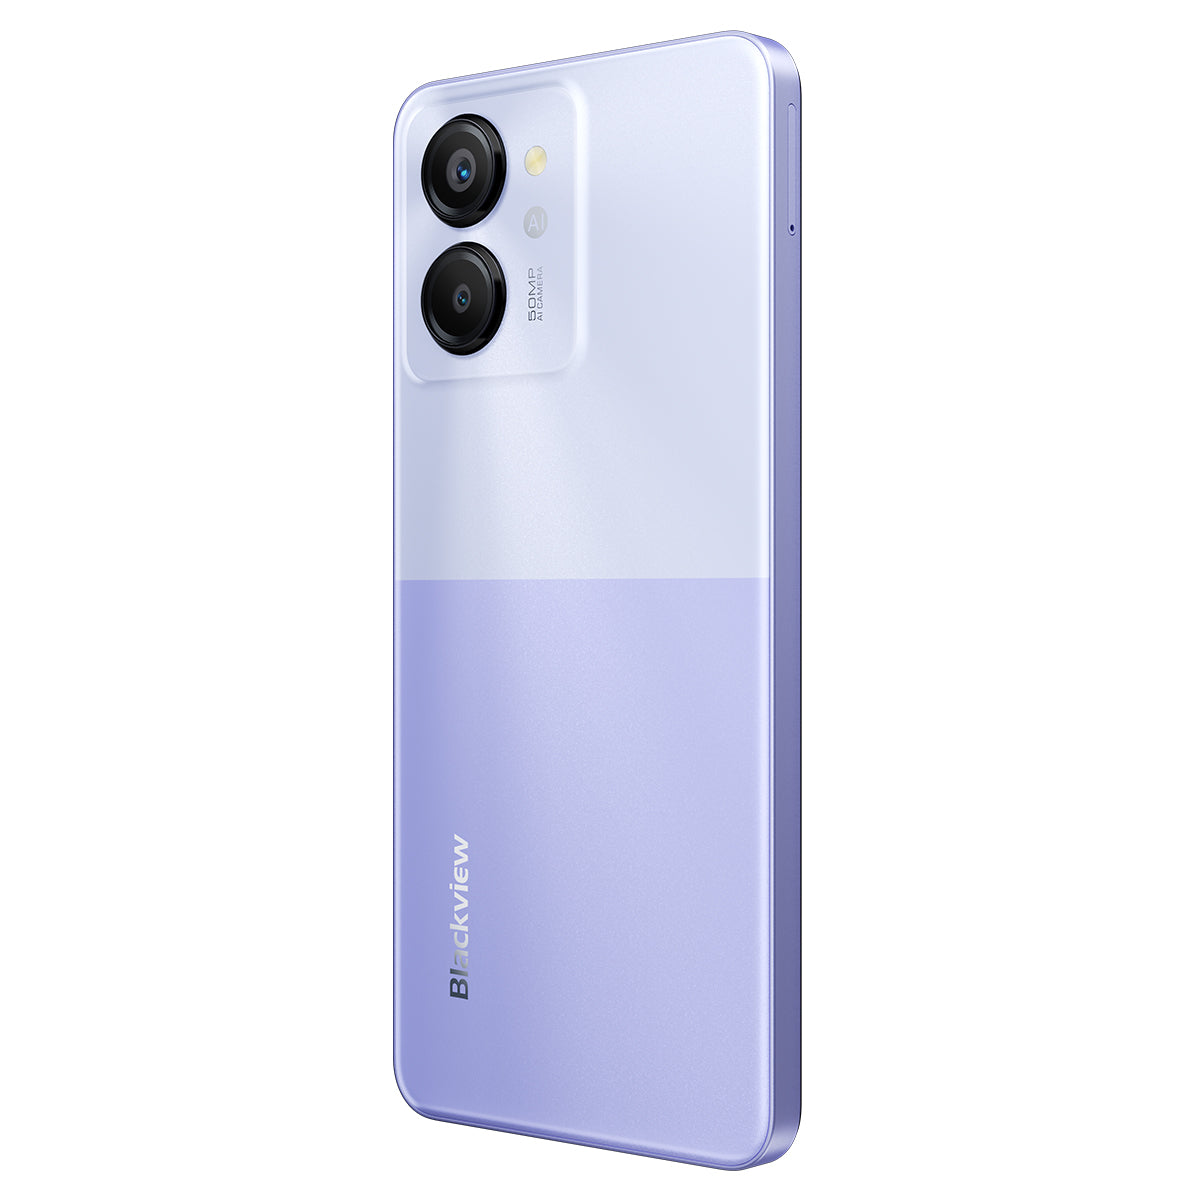 Blackview Color 8 - Smartphone 4G Unisoc T616 Octa-core da 6,75" da 8 GB+128 GB/256 GB con fotocamera da 50 MP